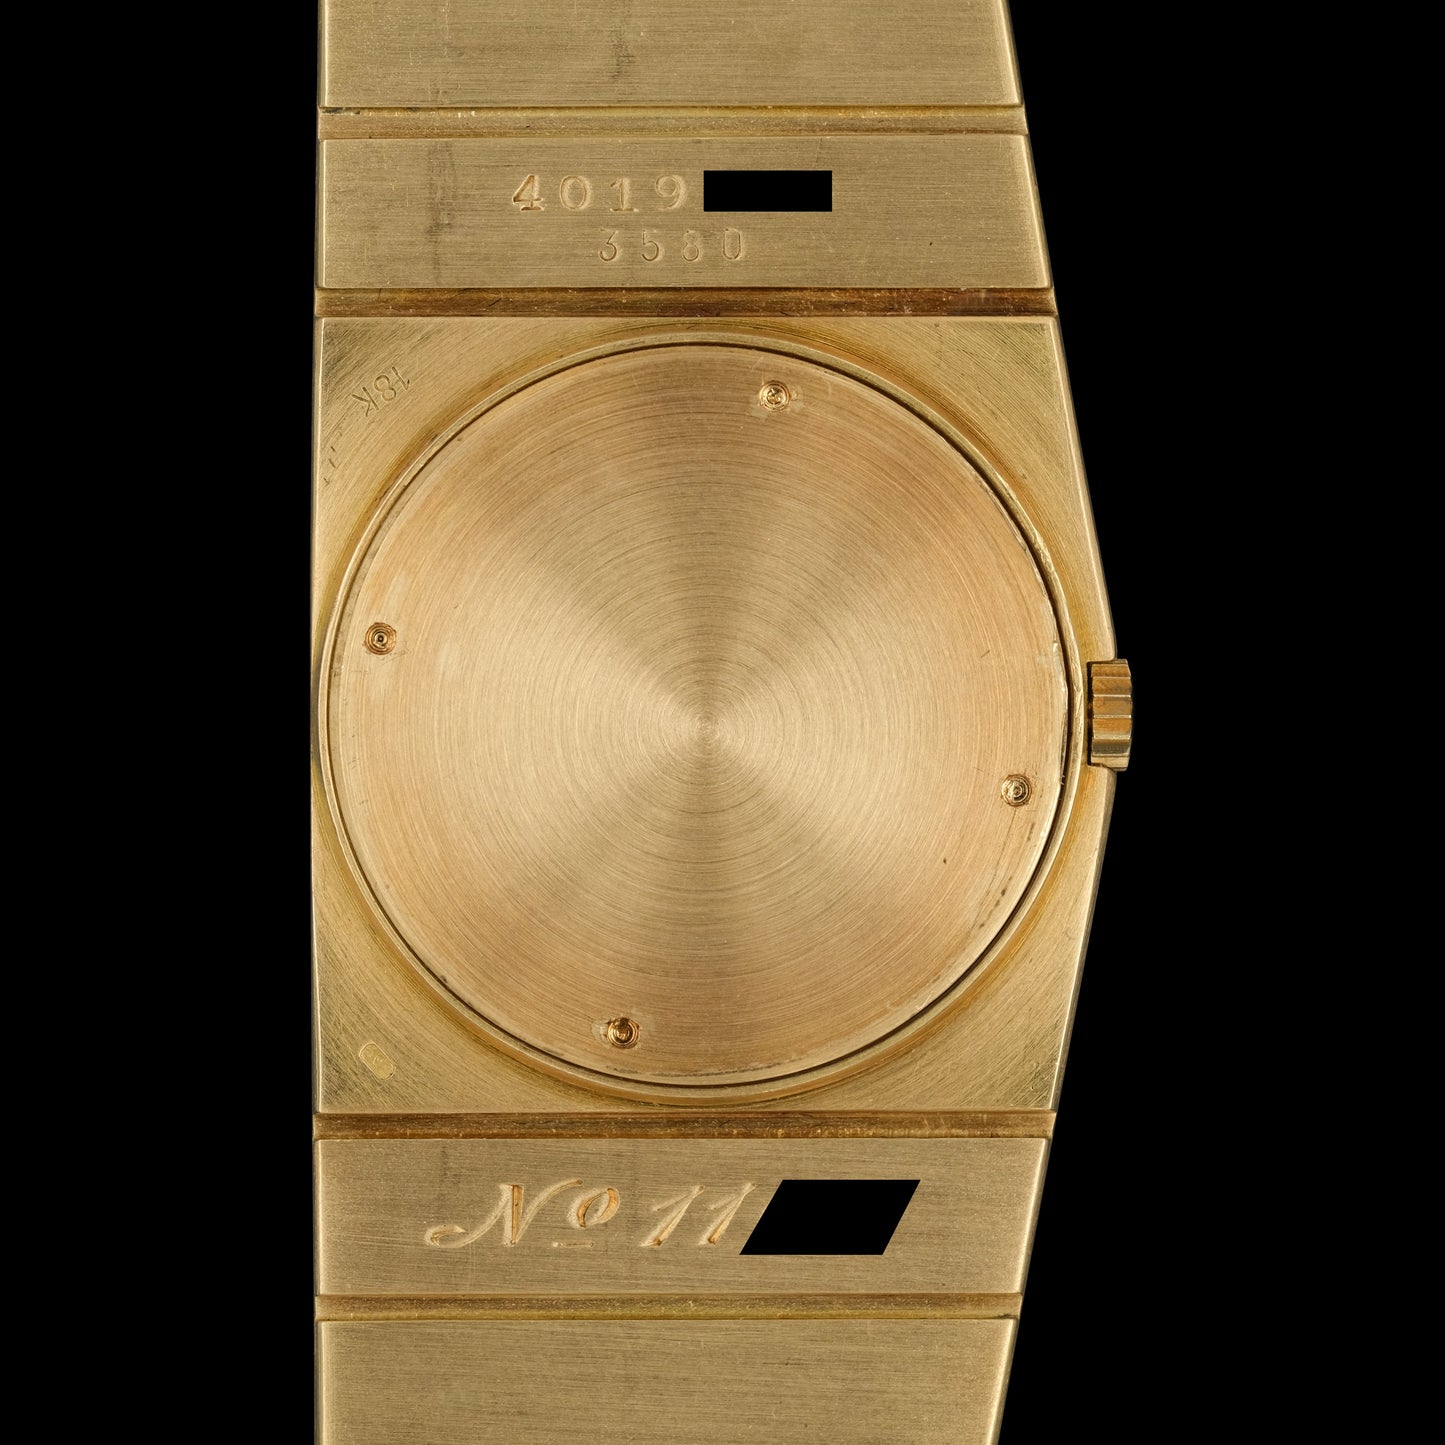 Rolex King Midas 18k ref.3580 2nd series from 1975